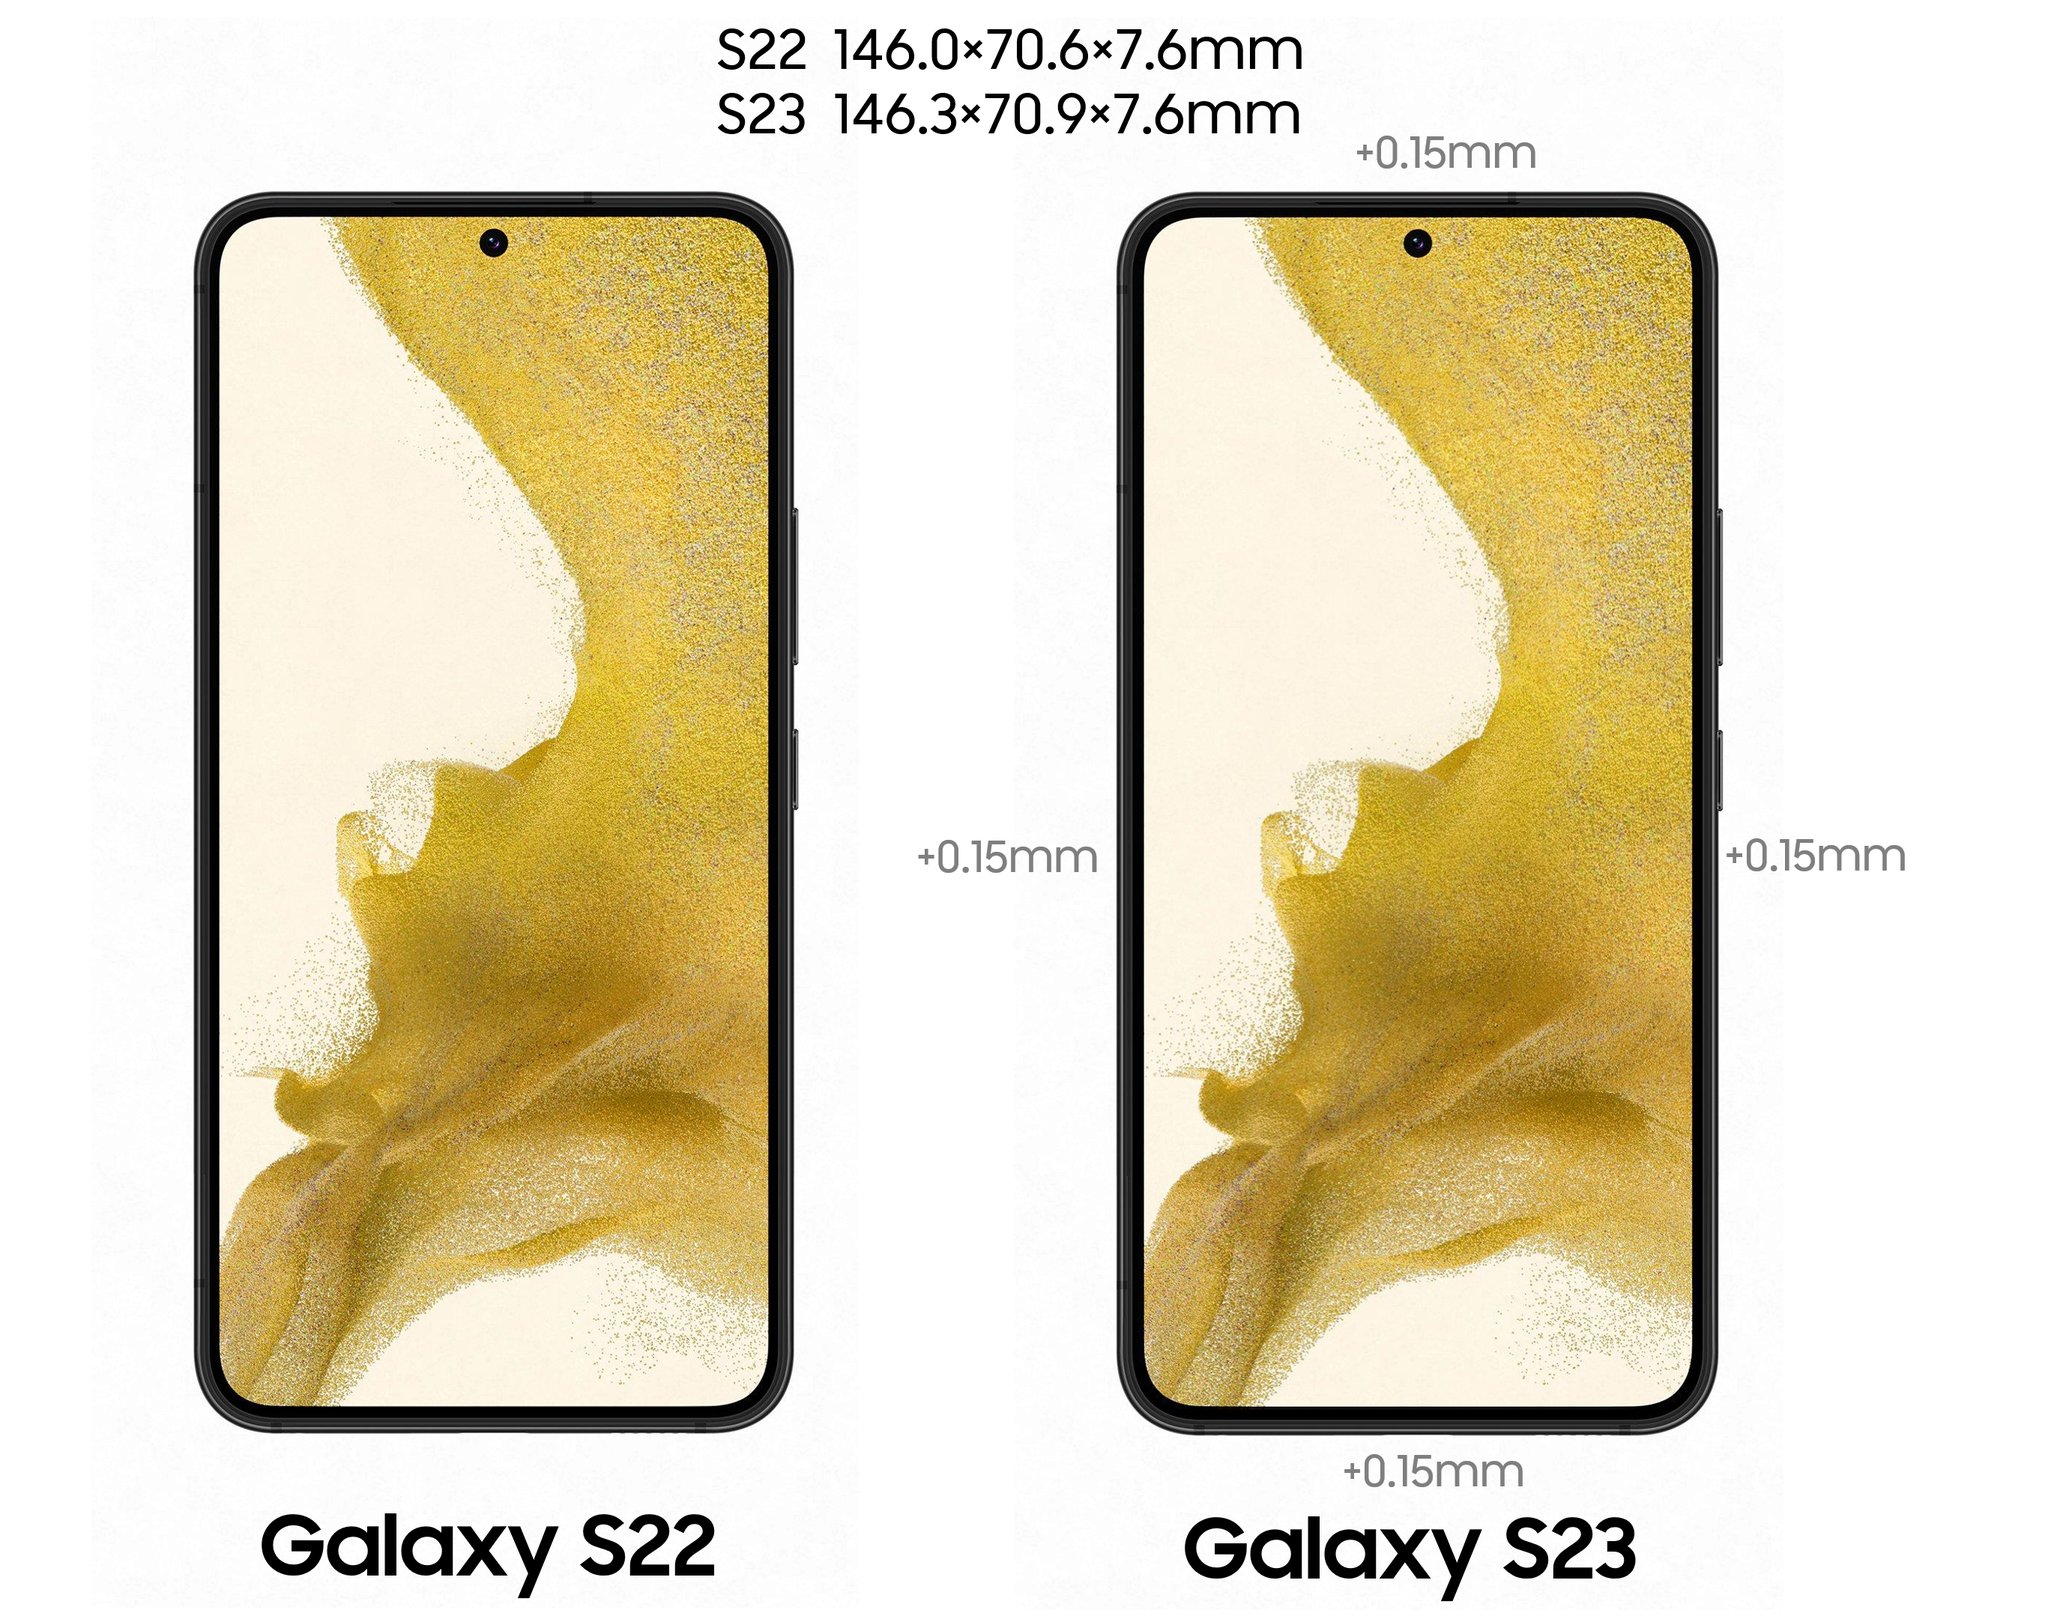 Ein Rendering eines potenziellen Samsung Galaxy S23 mit größeren Einfassungen.